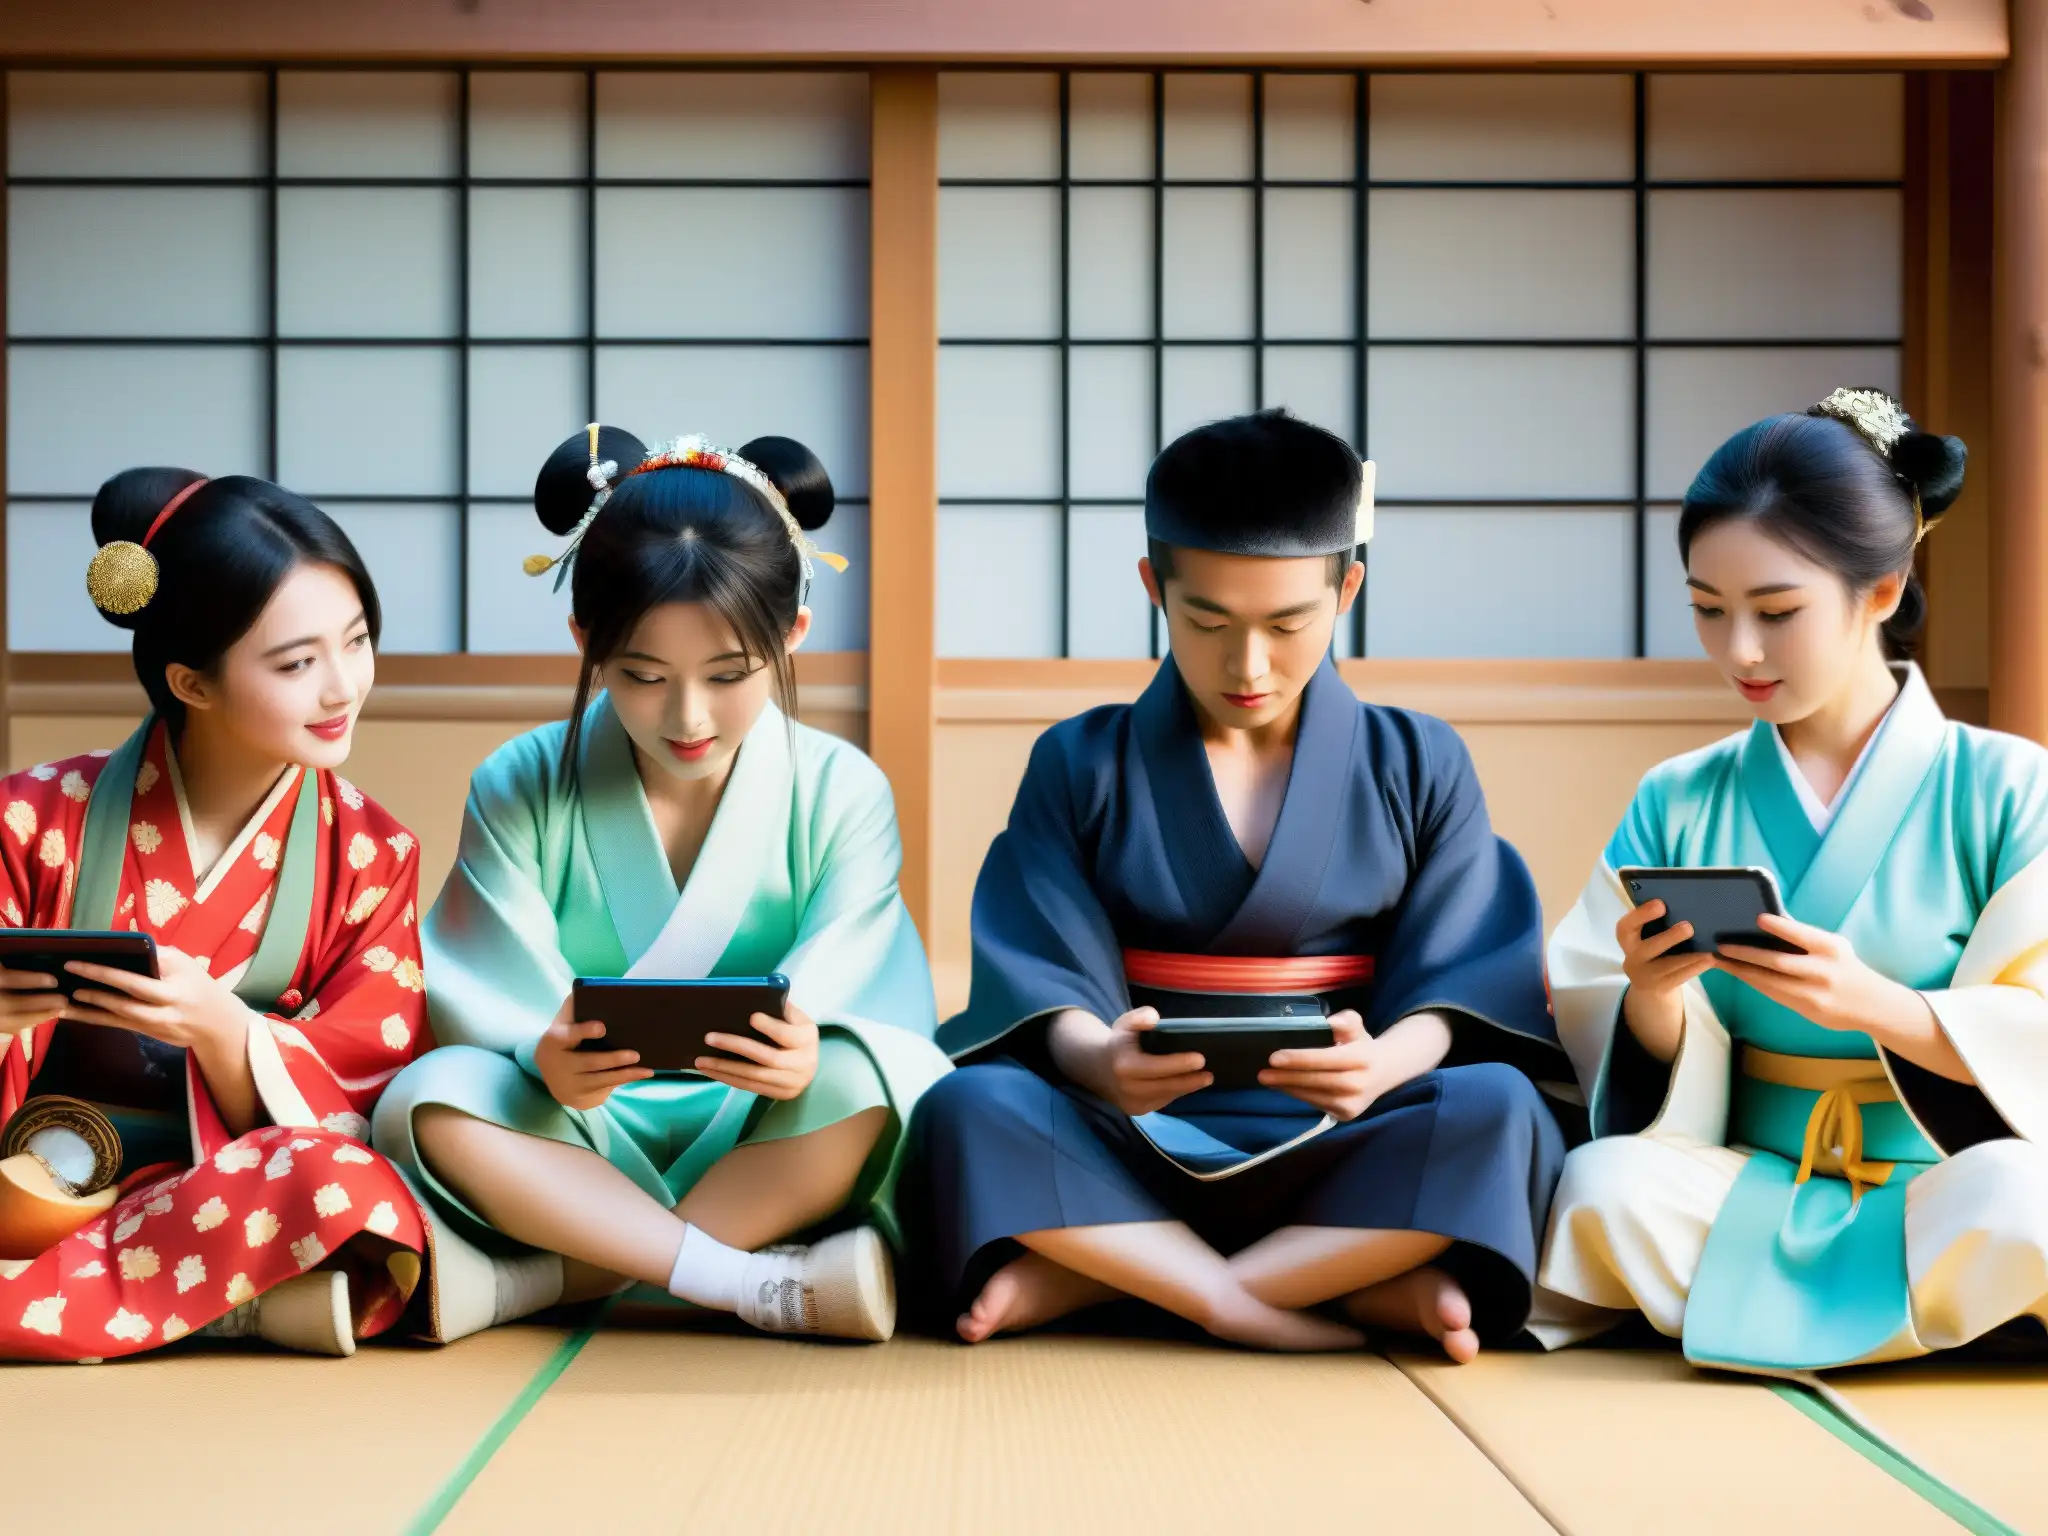 Un grupo de jóvenes influencers en ropa tradicional japonesa, combinando tecnología y tradición para reinventar mitos japoneses